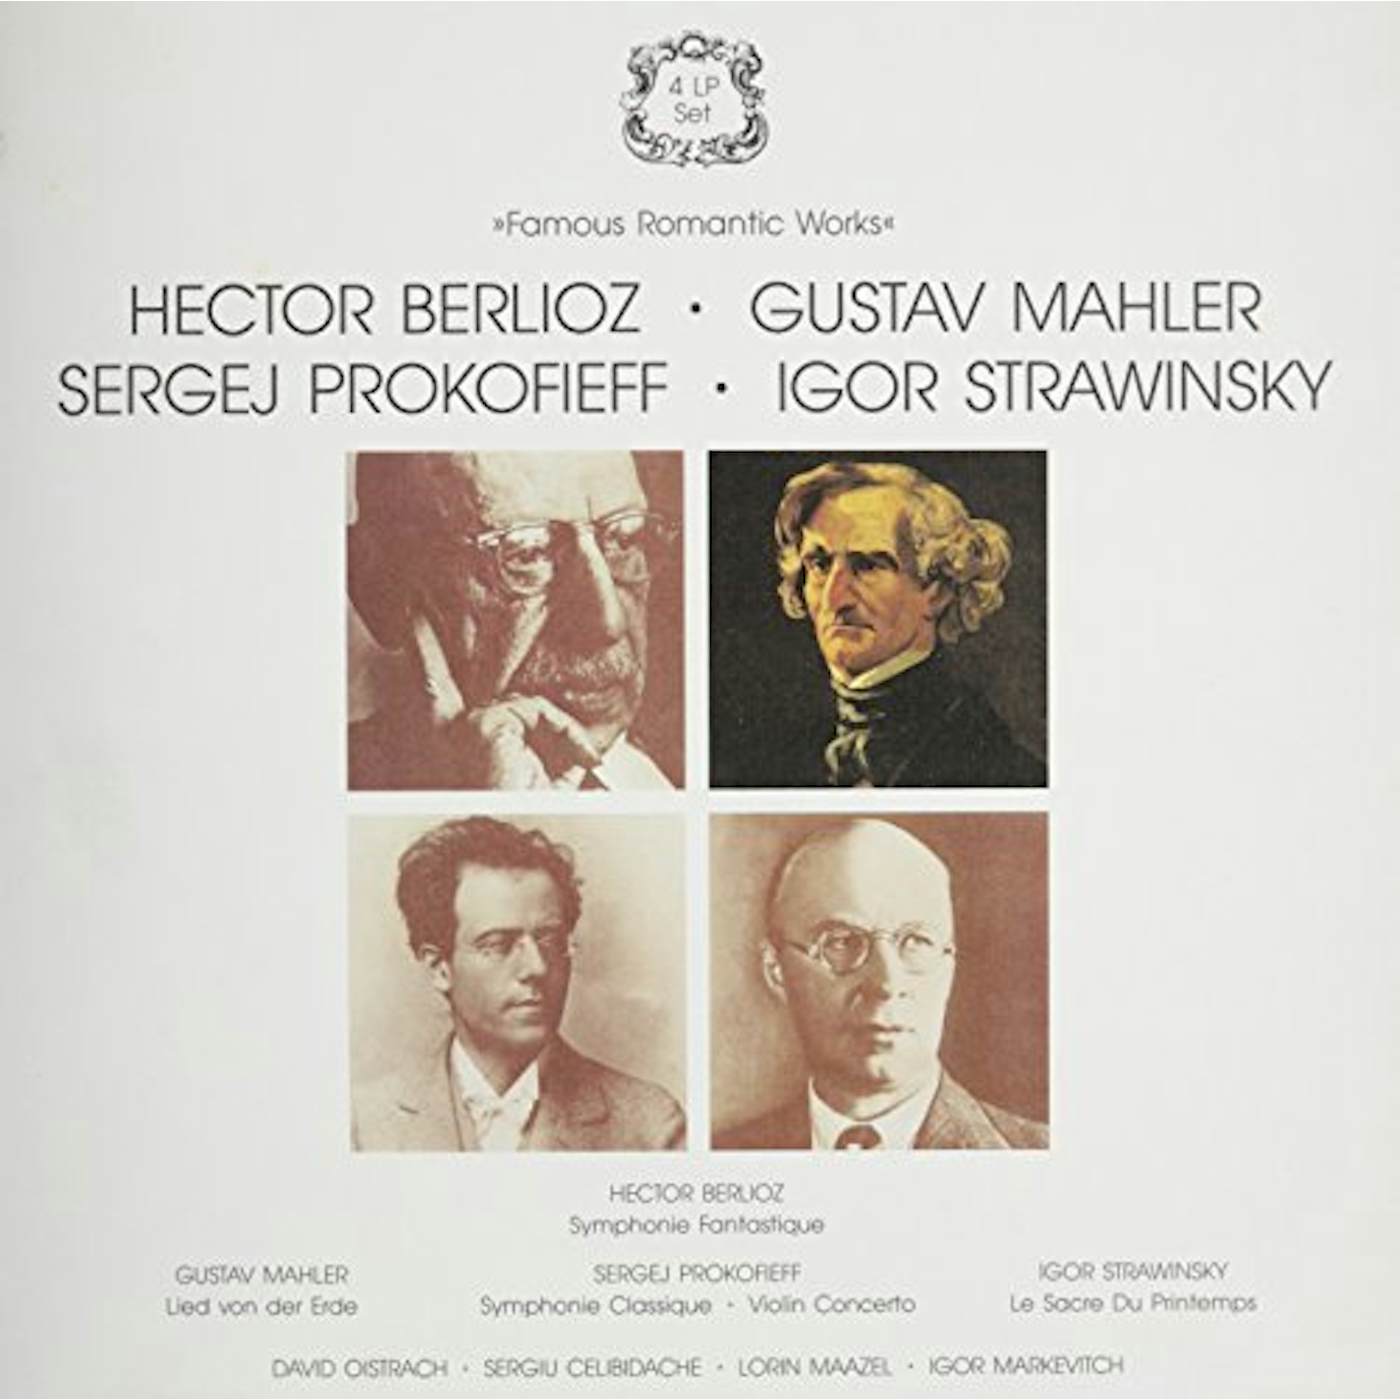 Berlioz FAMOUS ROMANTIC WORKS Vinyl Record